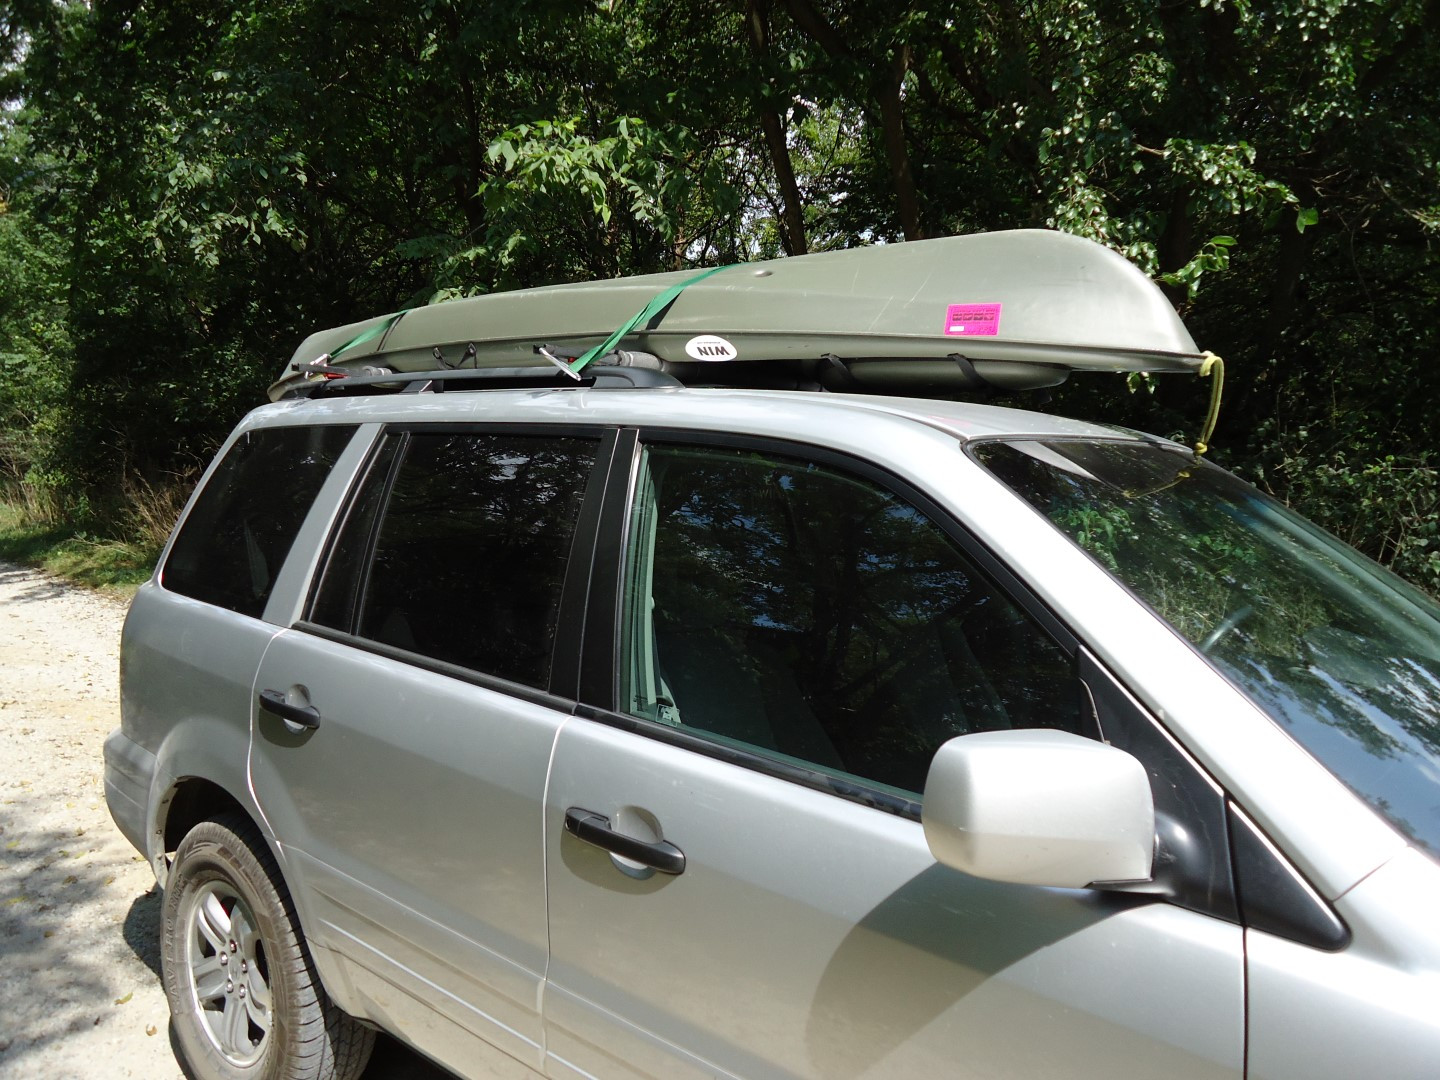 DIY Kayak Roof Rack
 DIY Great Looking Canoe or Kayak Racks For Under $40